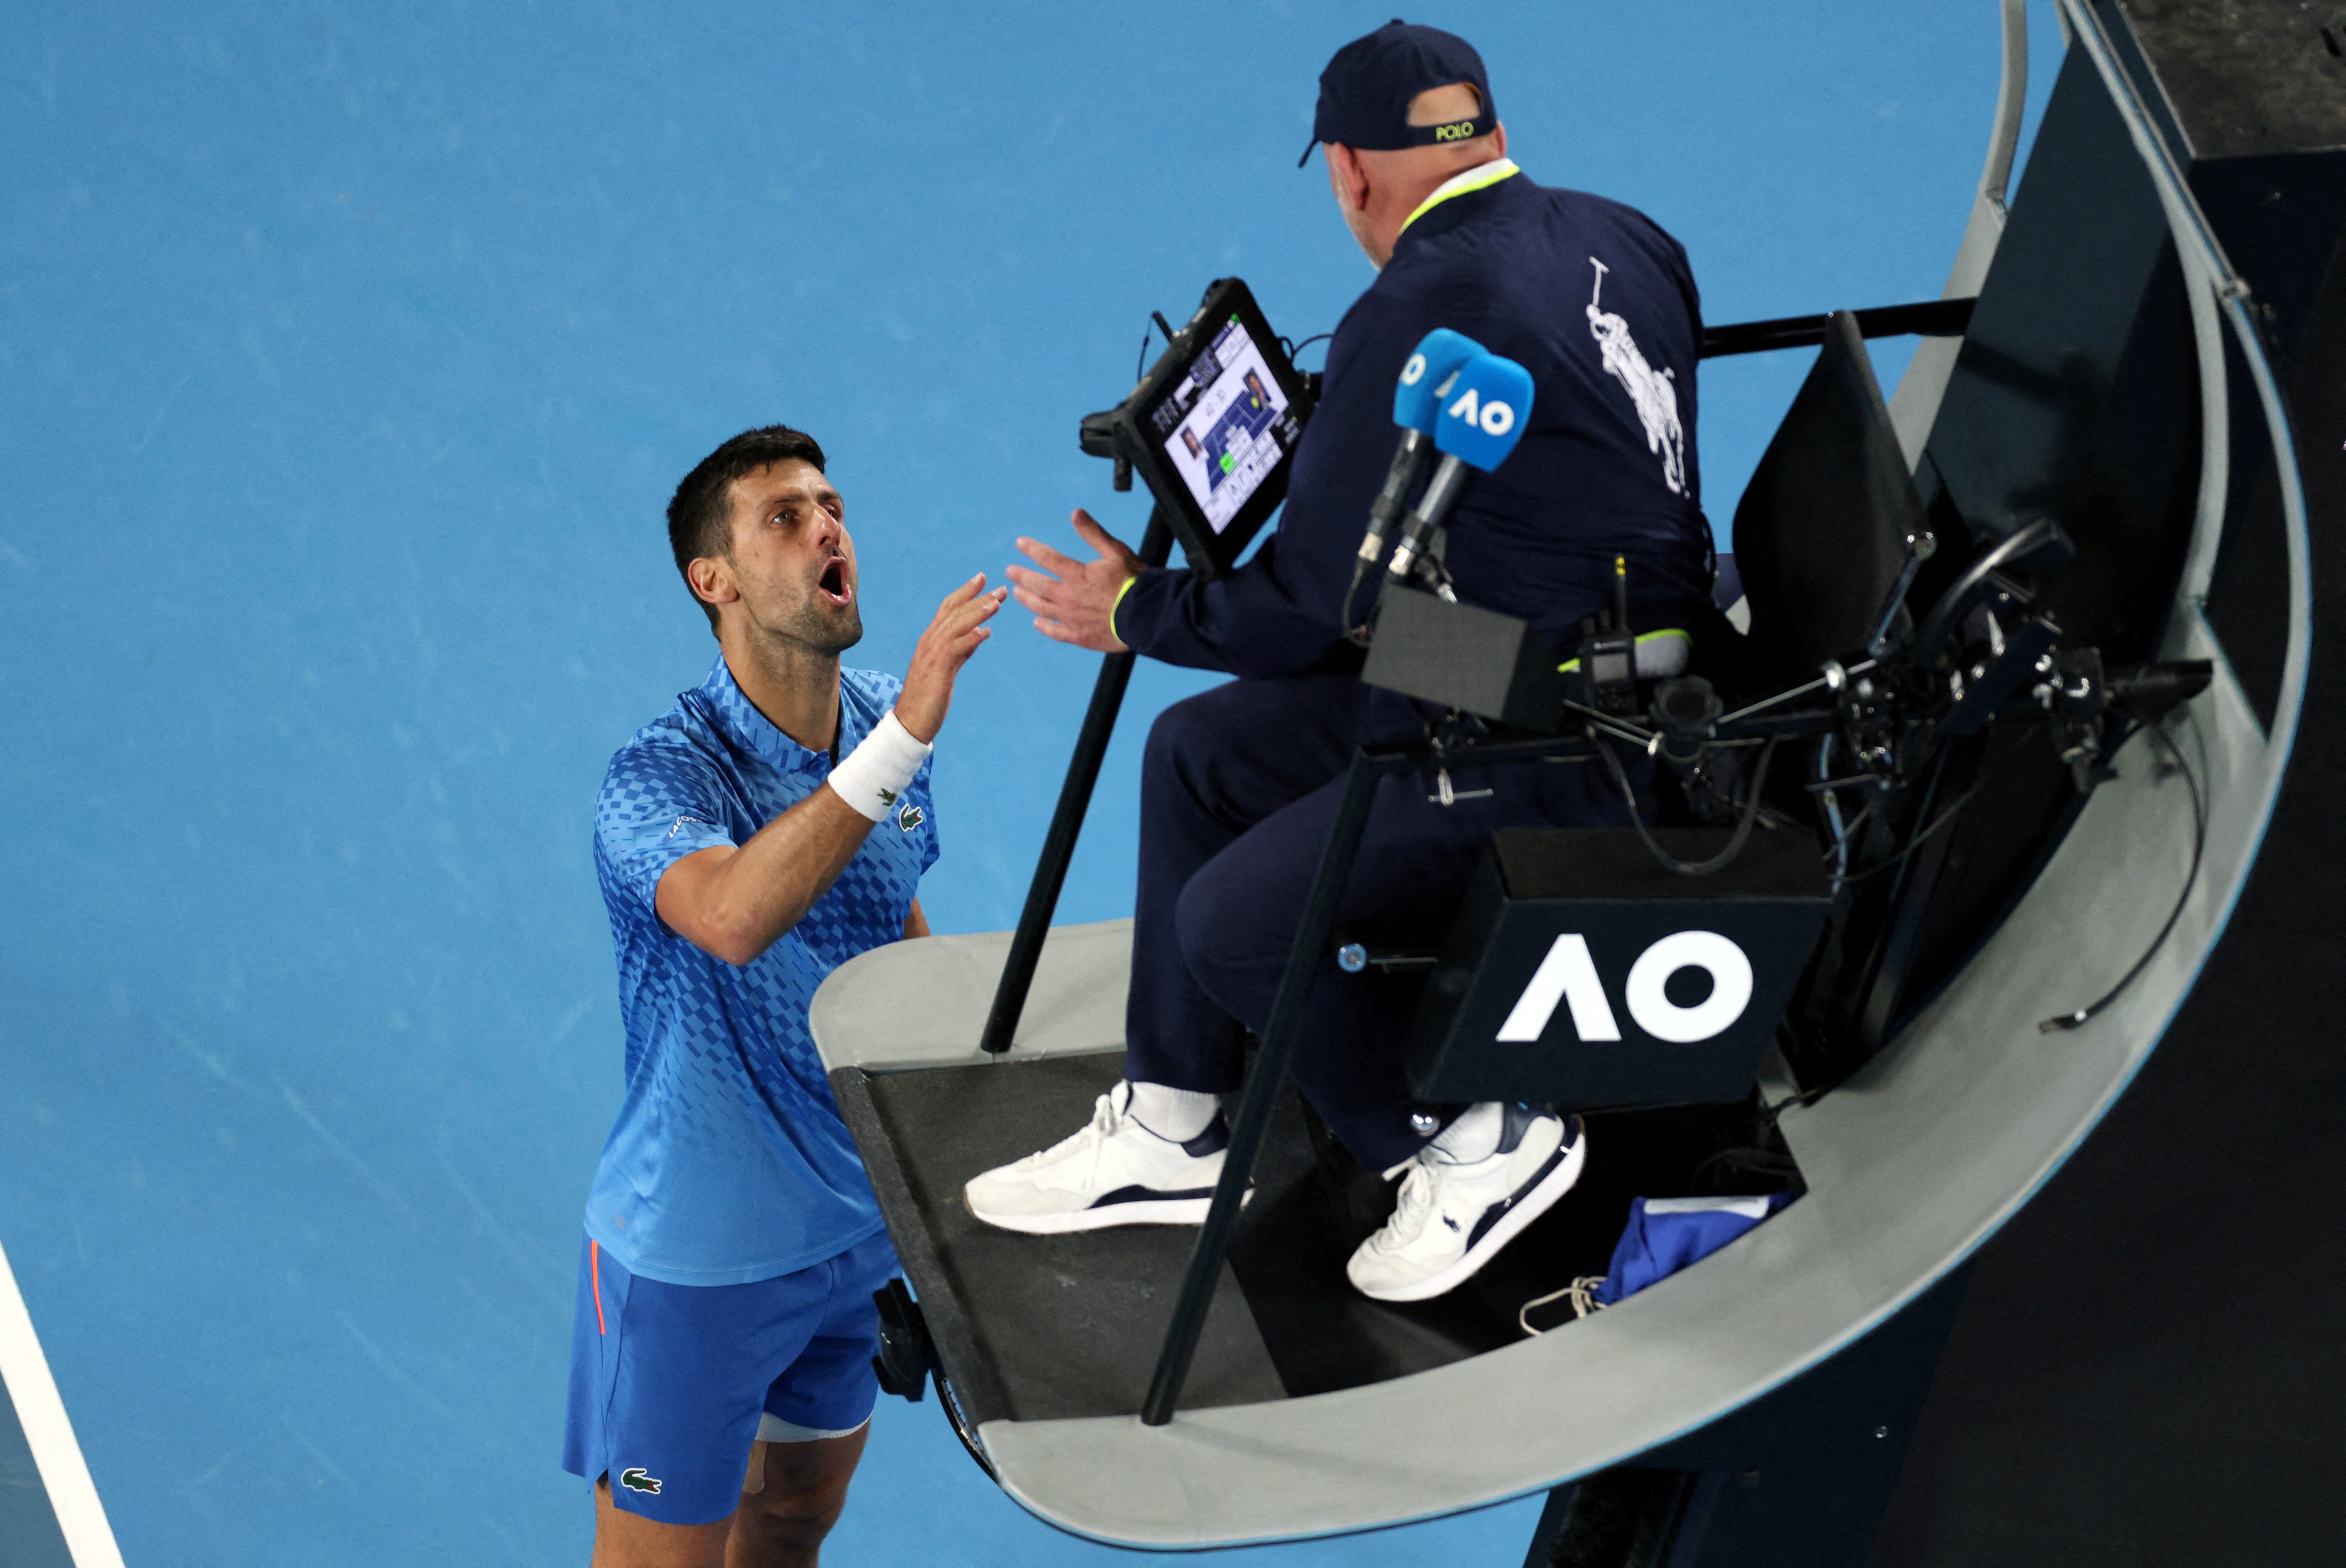 La furia de Novak Djokovic por un espectador disfrazado que lo insultó en el Australian Open: “Está completamente borracho”